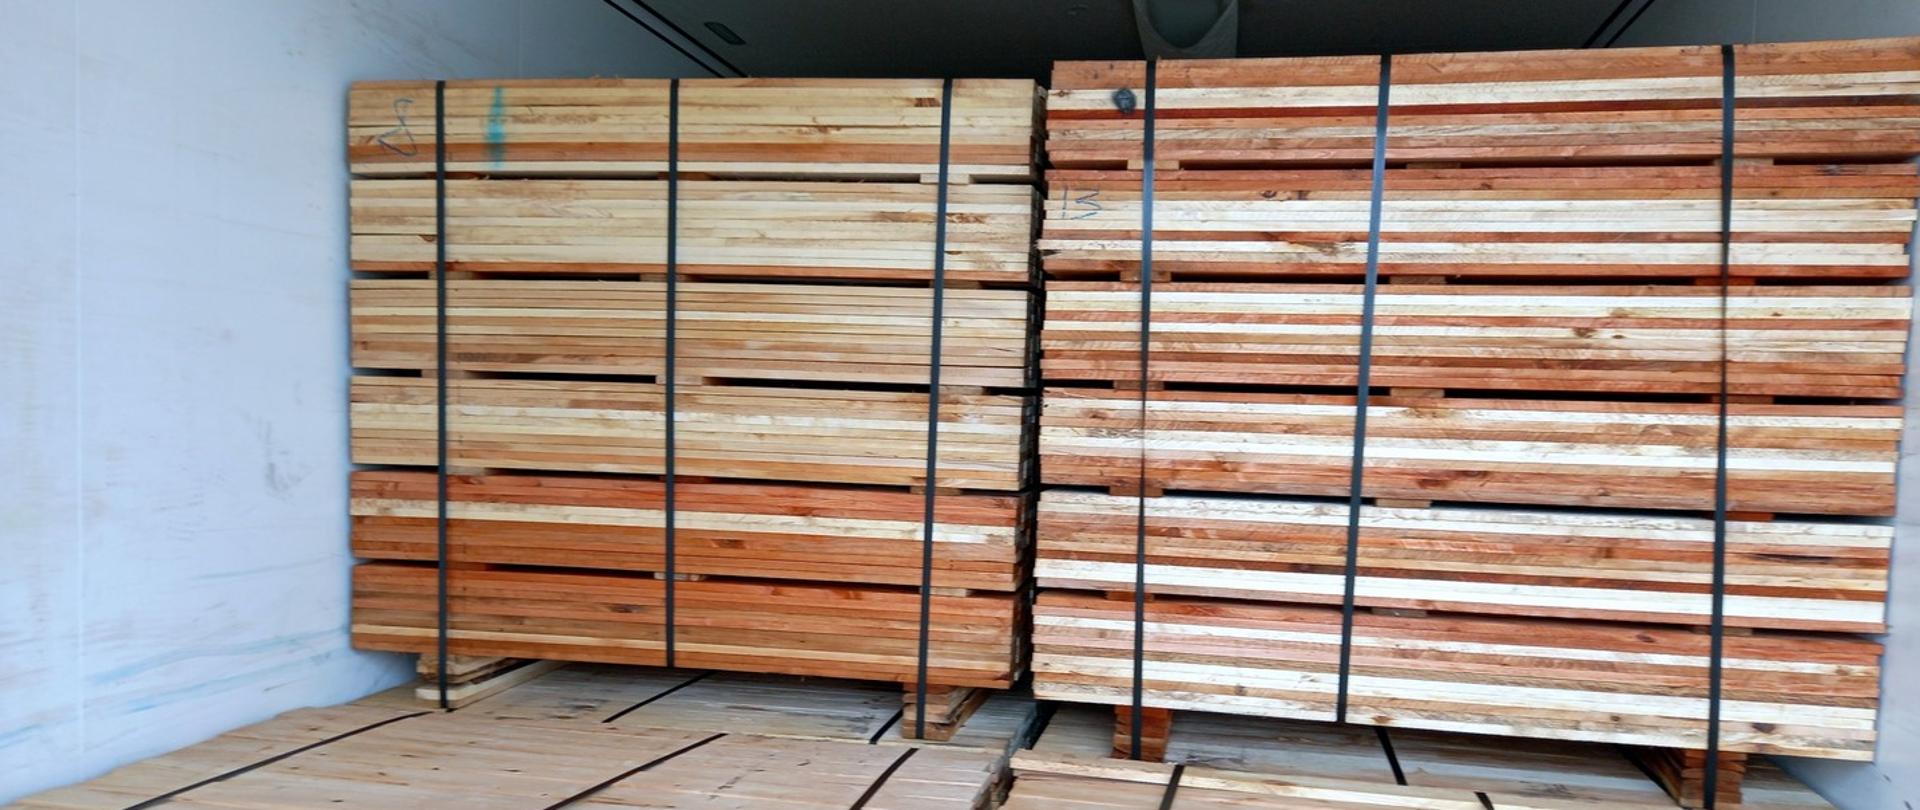 Litewski przedsiębiorca przewoził drewniane deski na trasie z Łotwy do Niderlandów mimo obowiązujących weekendowych zakazów ruchu. Na zdjęciu widać wypełnioną deskami ładownię naczepy